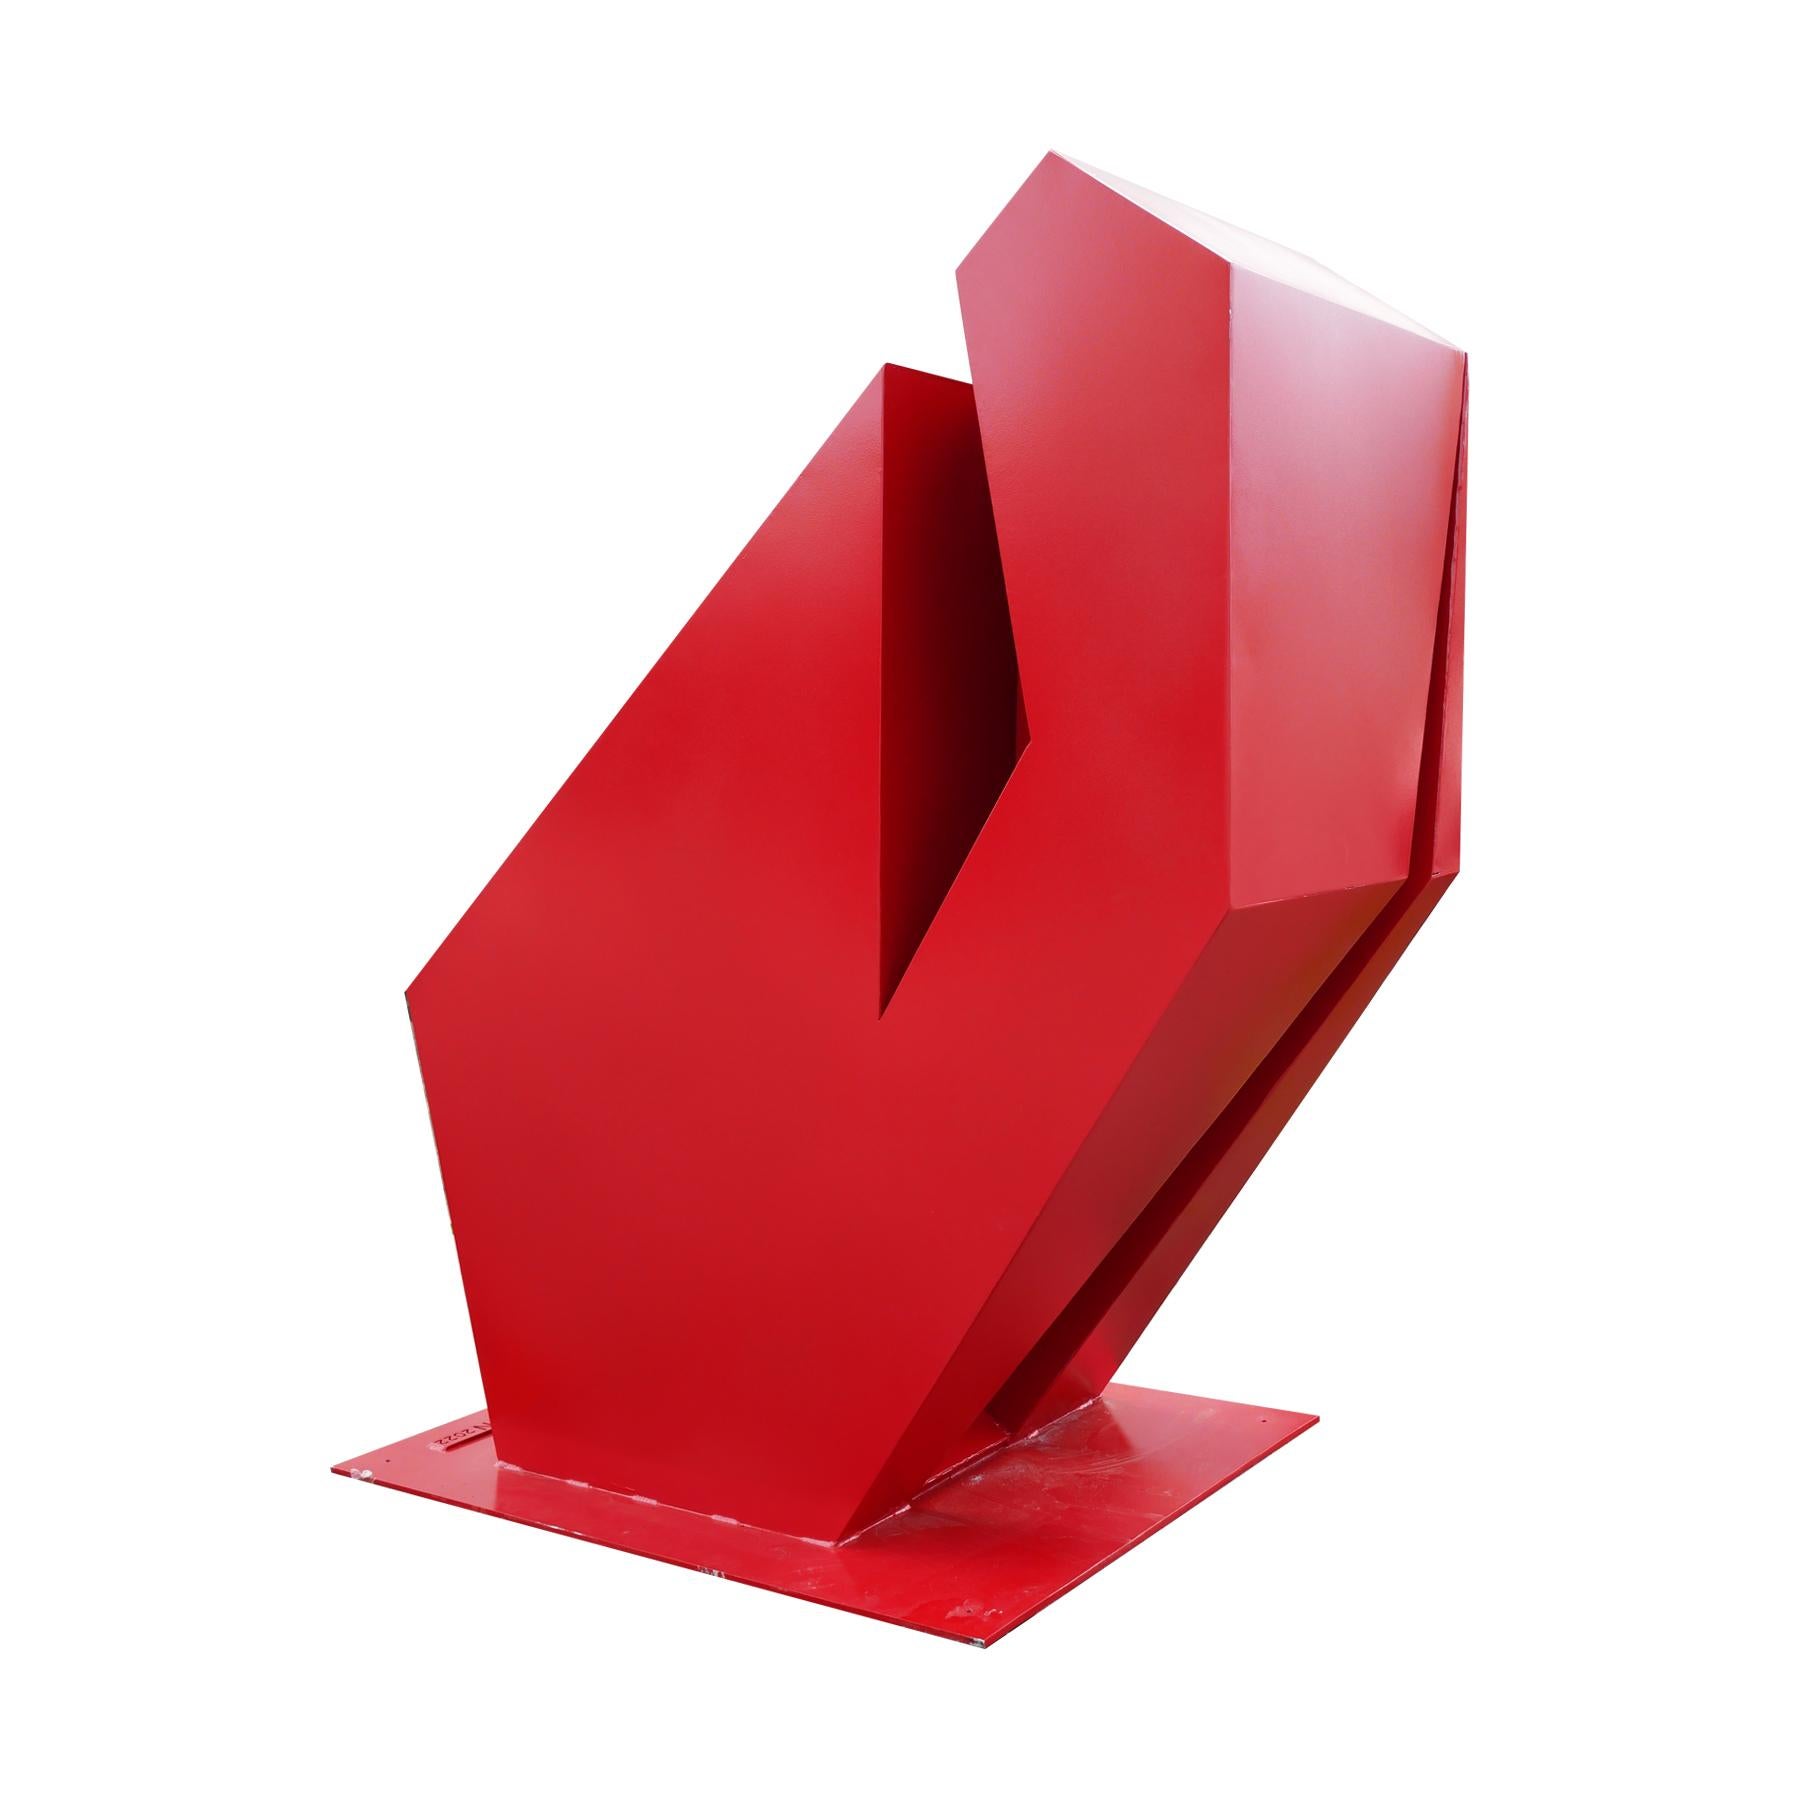 Grande sculpture géométrique rouge faite sur mesure par Scott Avidon. Cette sculpture angulaire a été fabriquée et réalisée pour Reeves Art + Design et est une nouvelle pièce contemporaine qui fait désormais partie de leur collection. Fabriqué en